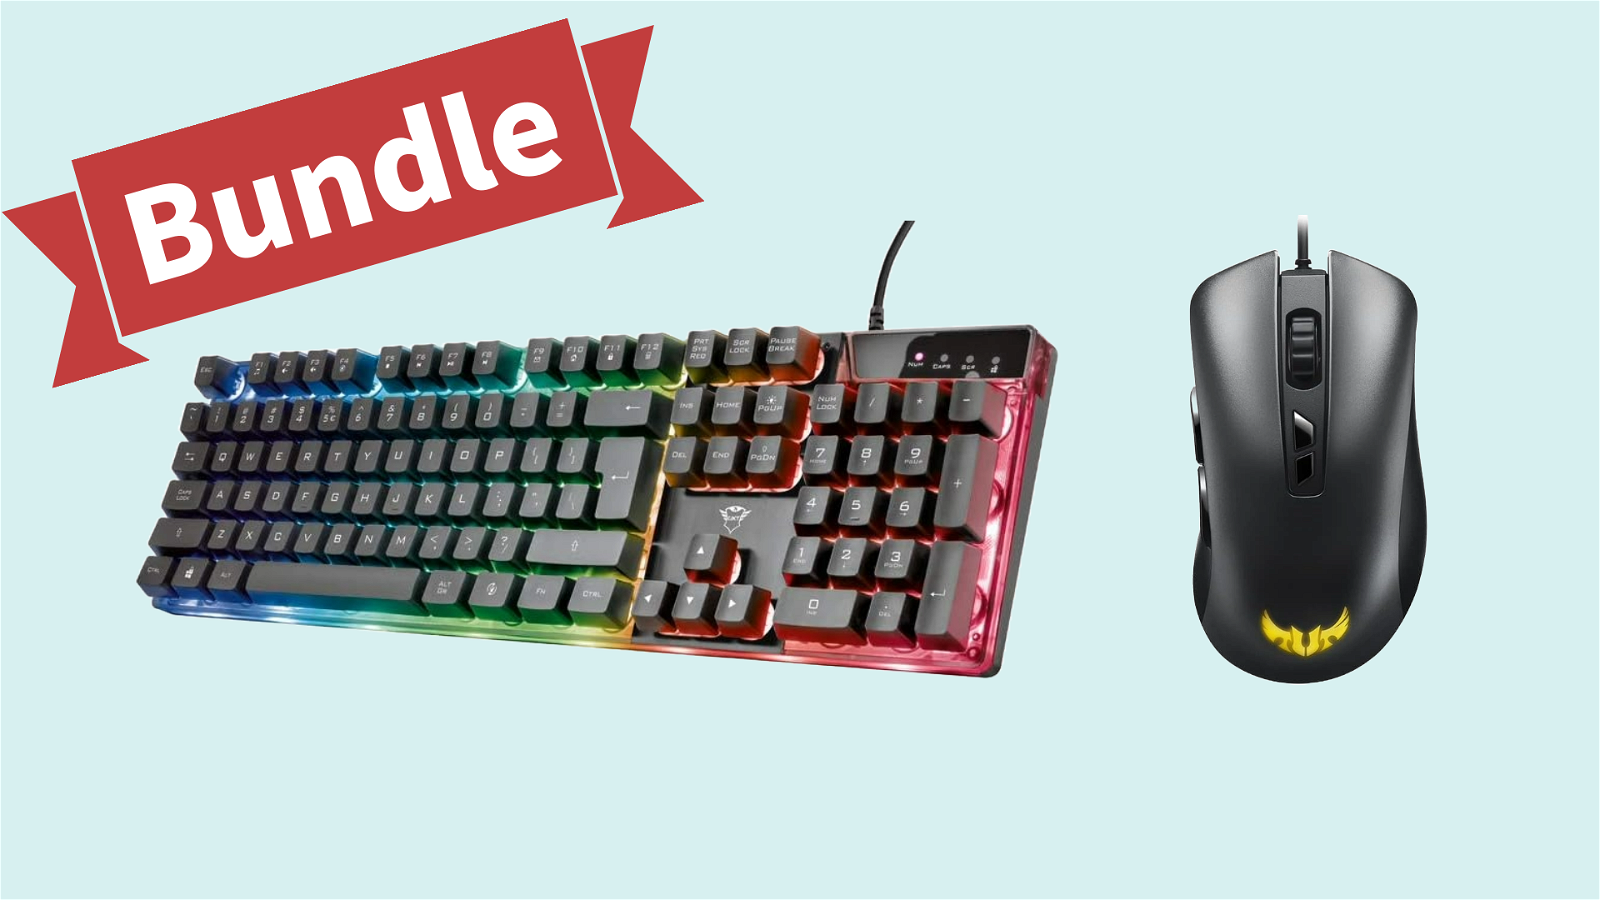 Immagine di Mouse e tastiera a meno di 50€: scopri il bundle suggerito da Tom's!